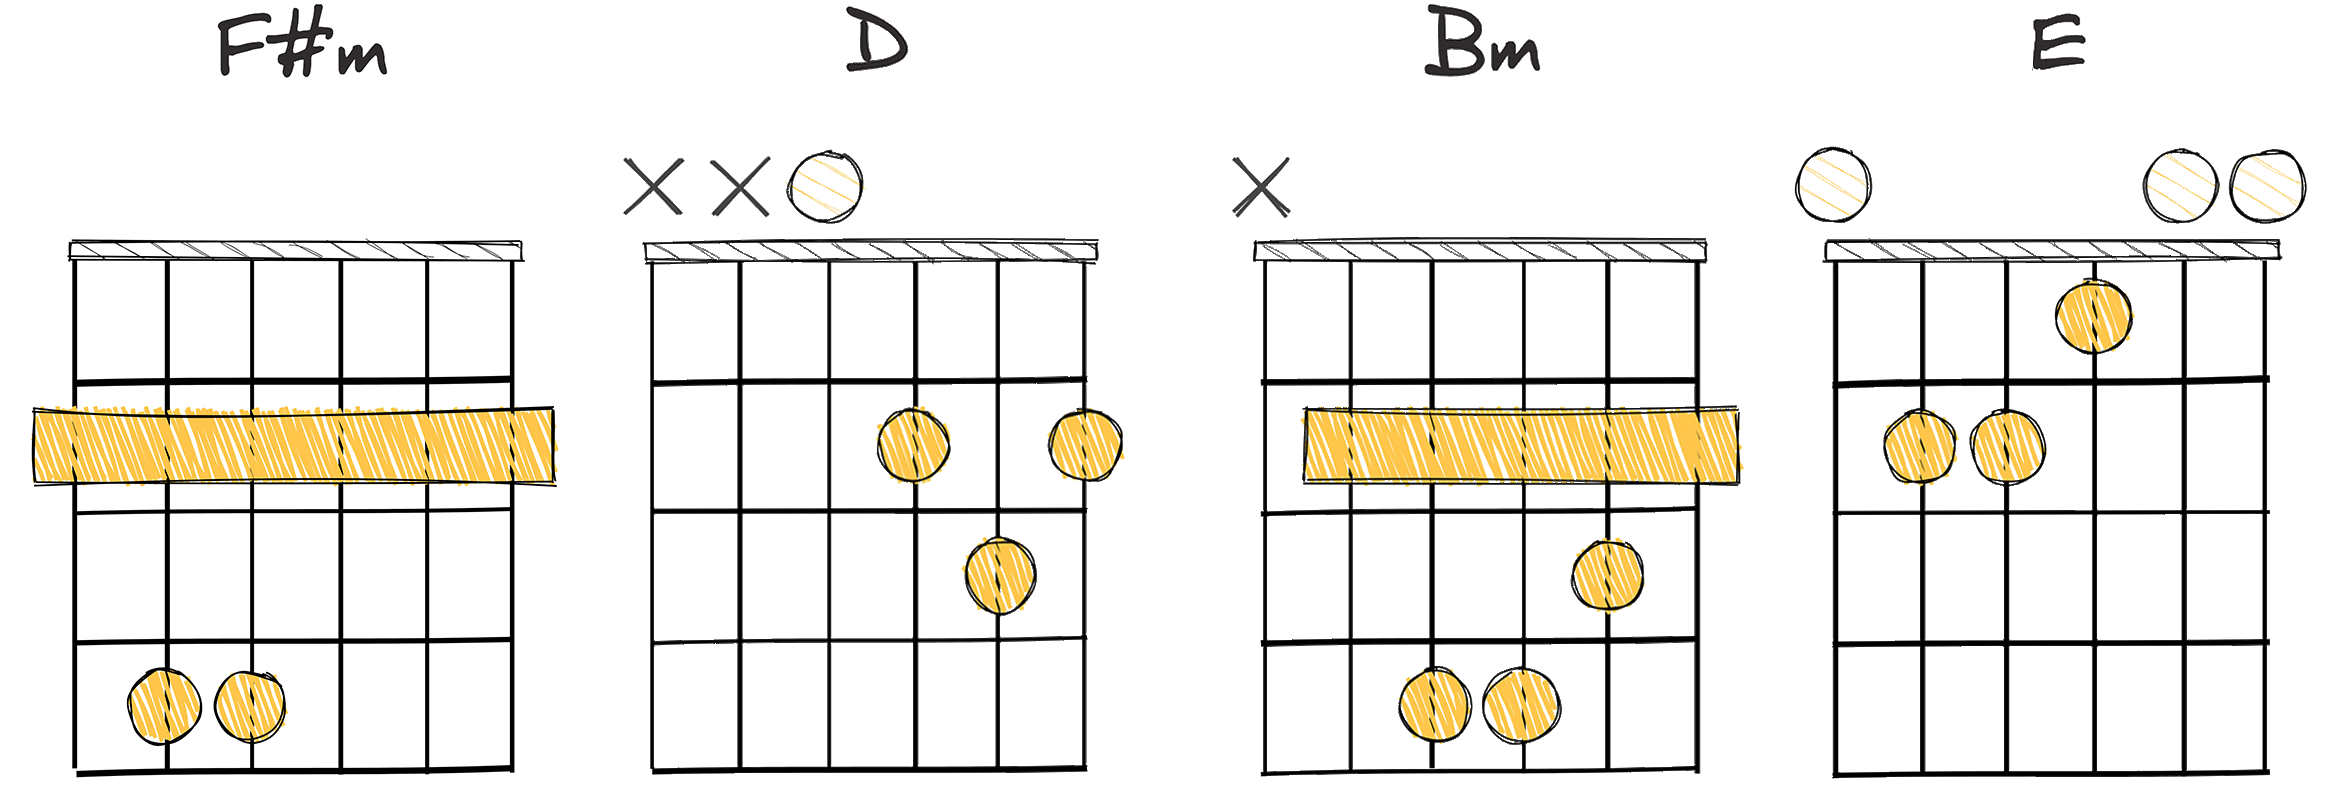 vi - IV - ii - V (6 - 4 - 2 - 5) chords diagram